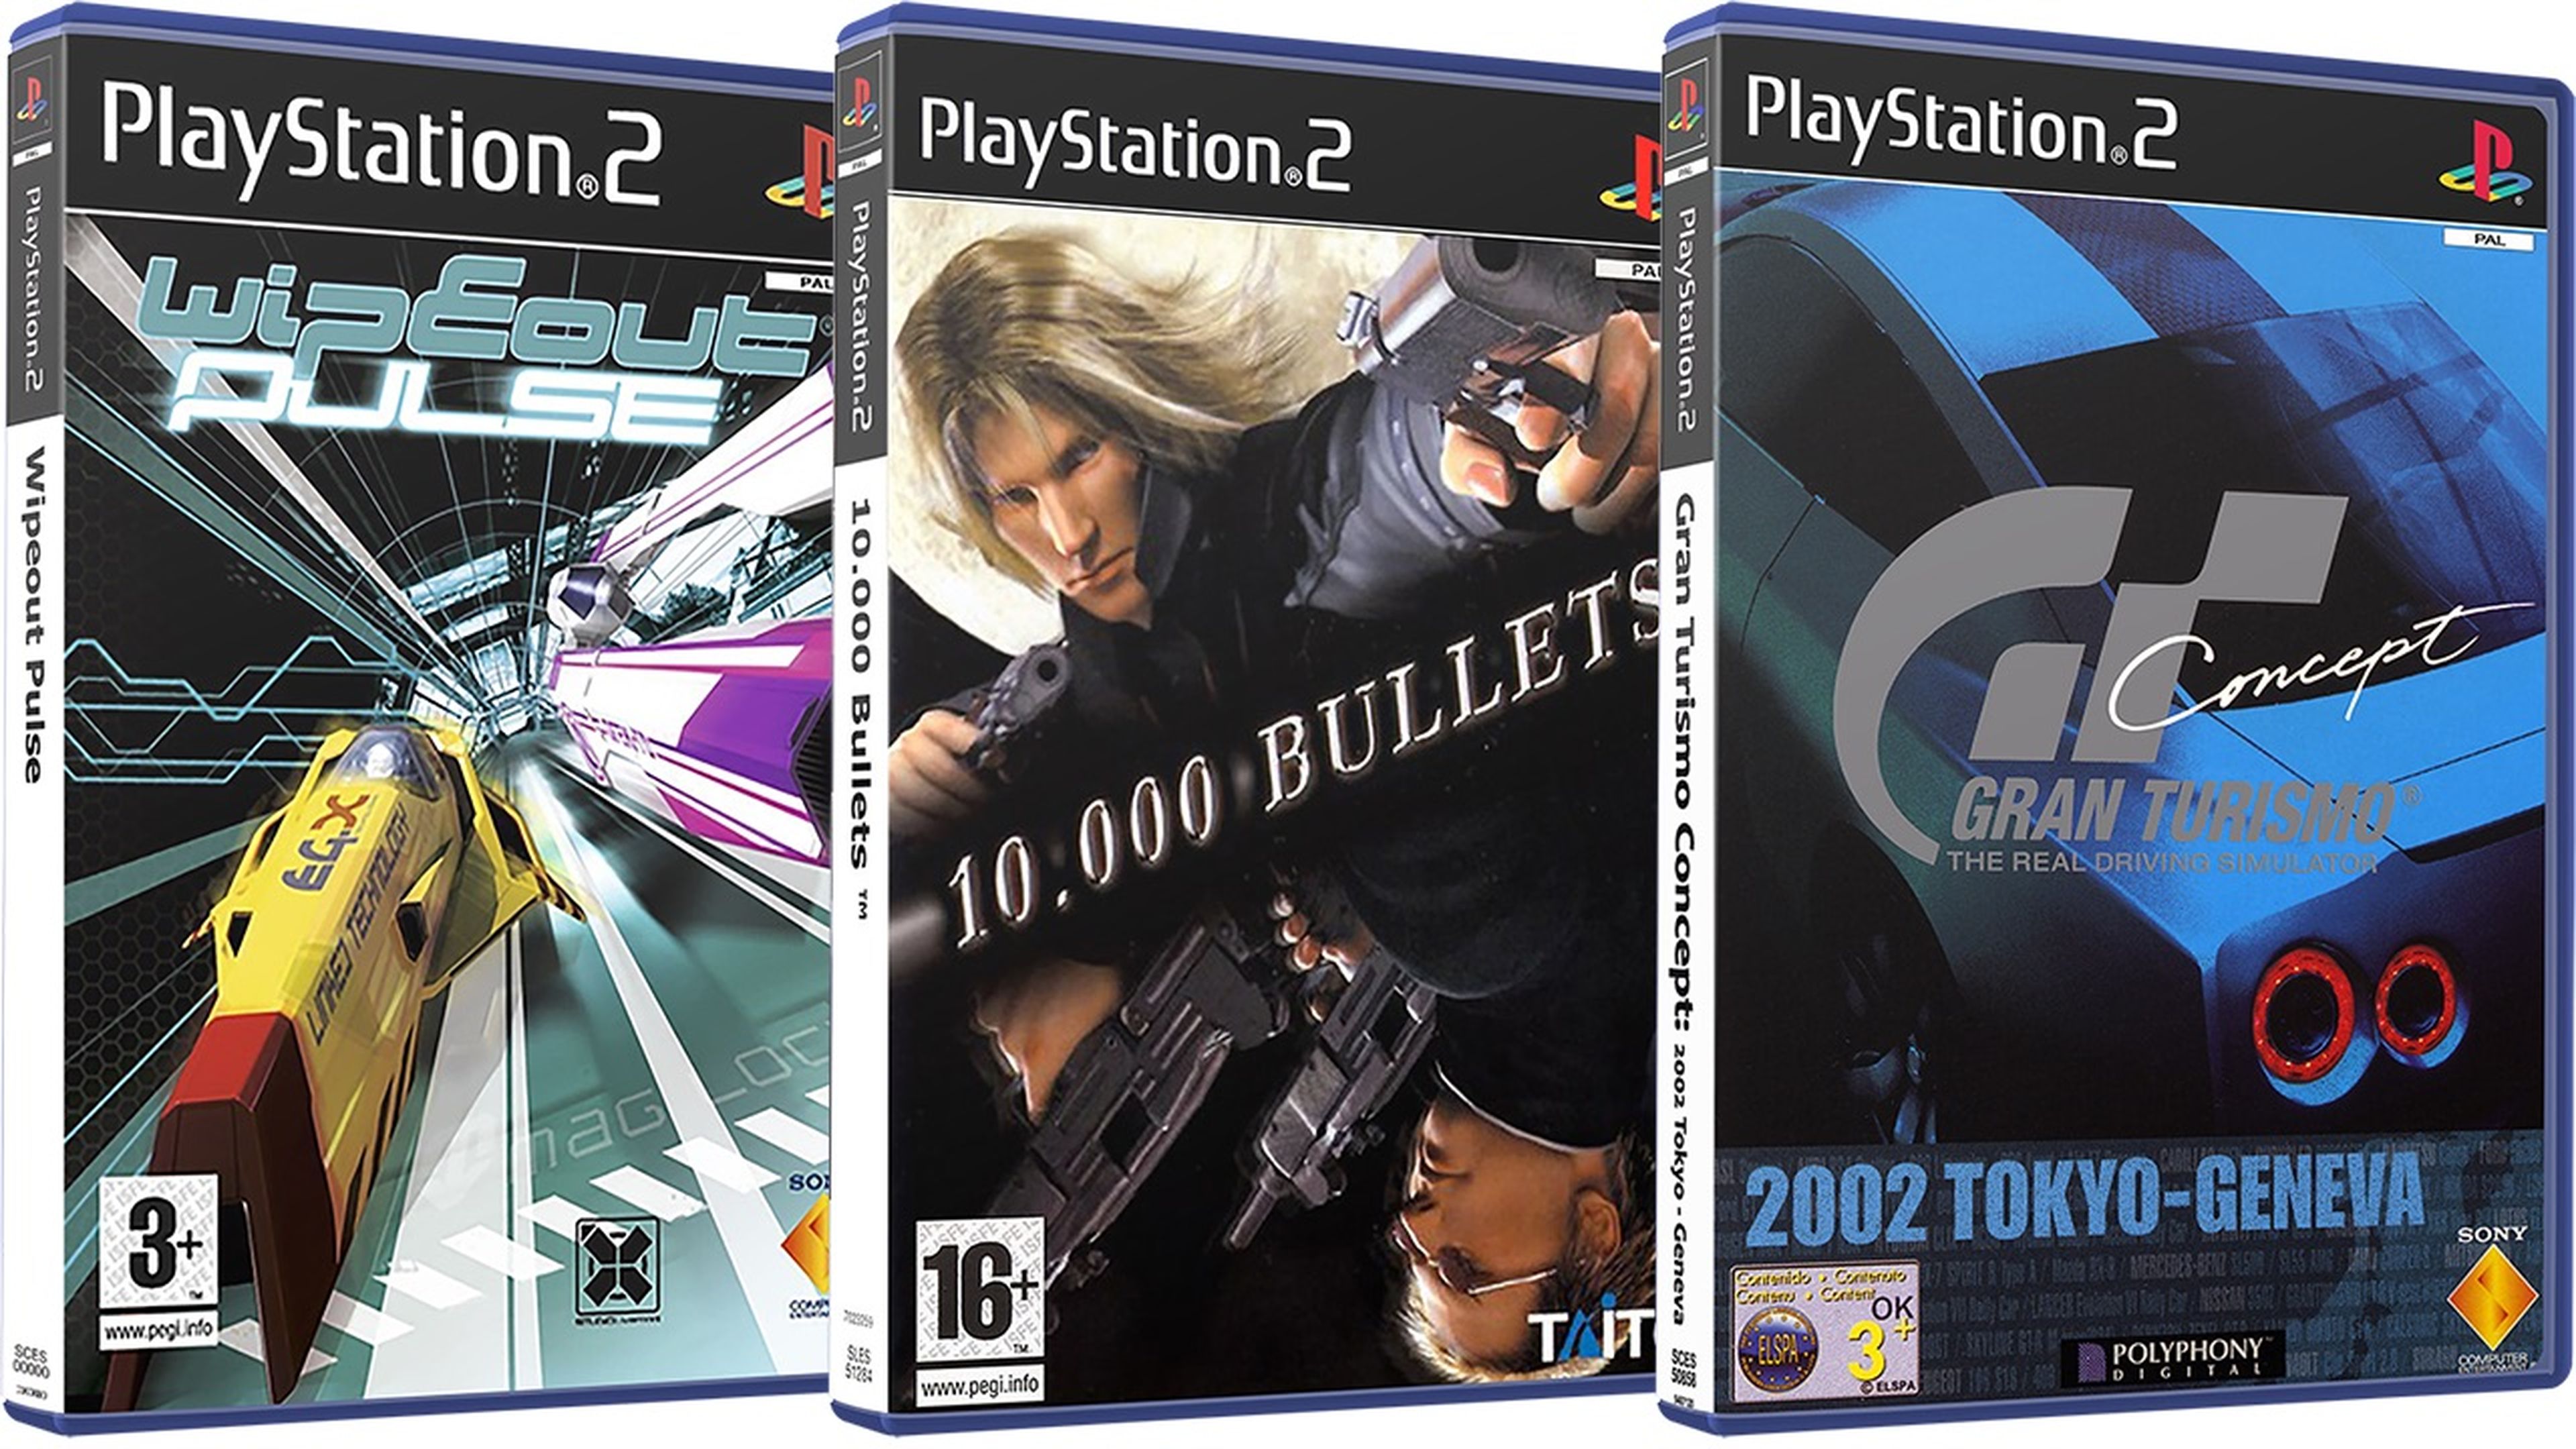 Los juegos de PS2 pudieron tener unas cajas muy distintas, como